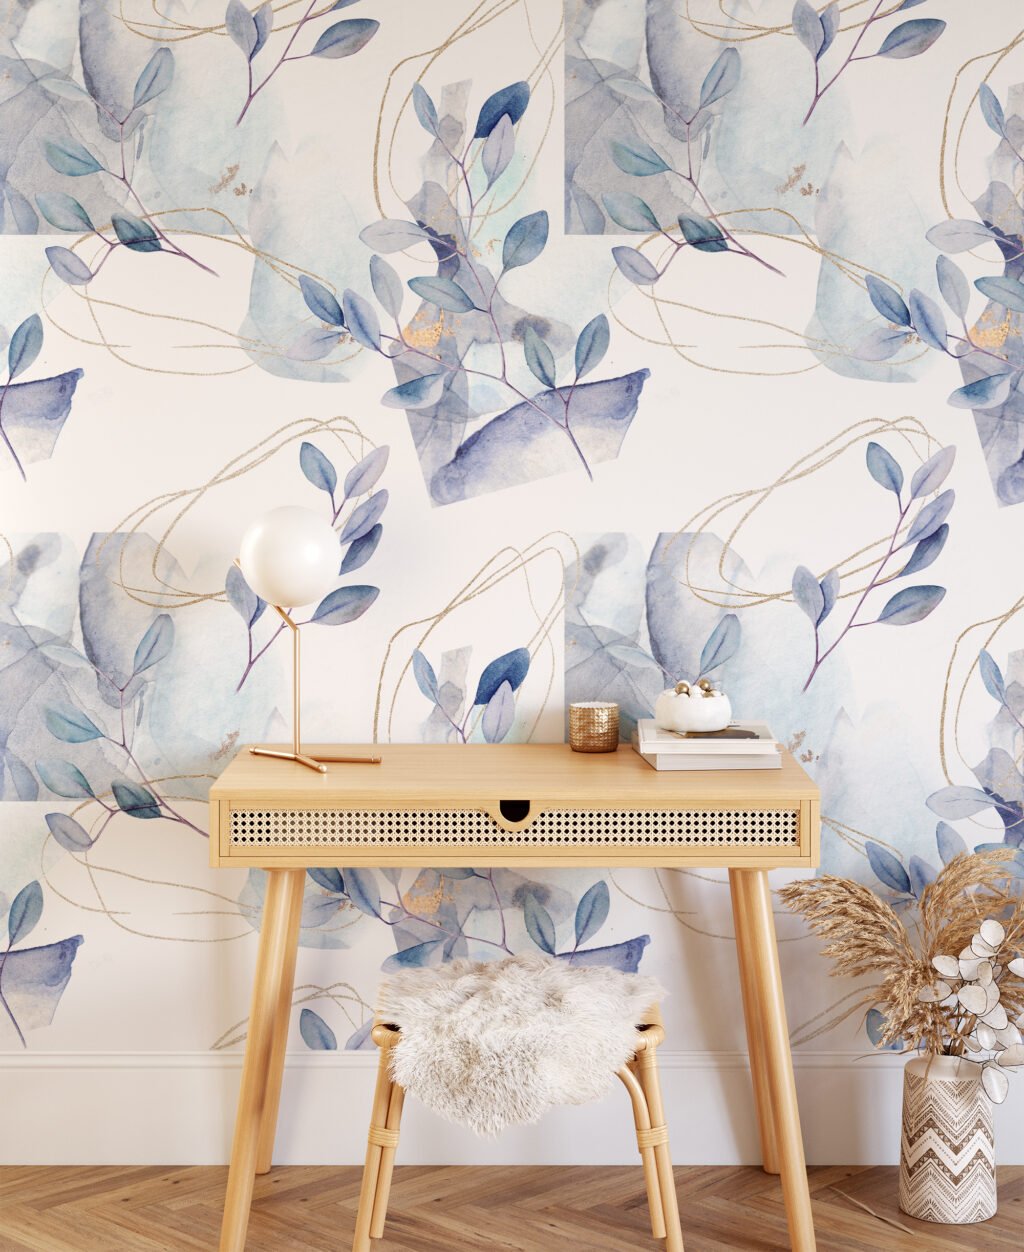 Sulu Boya Tarzı Pastel Yapraklı Dallar Duvar Kağıdı, Mavi Mor Yapraklar 3D Duvar Posteri Çiçekli Duvar Kağıtları 3